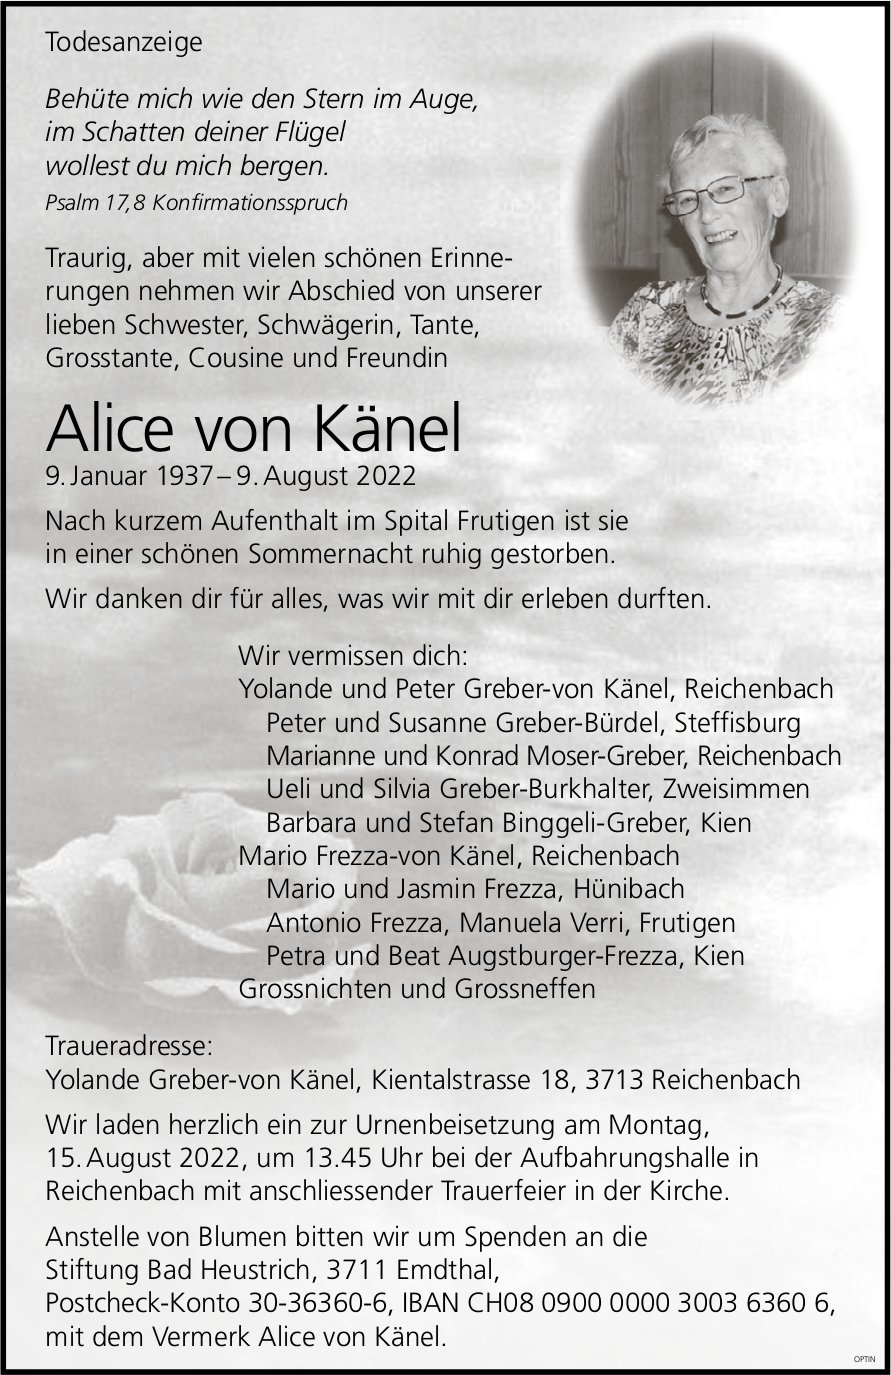 Alice von Känel, August 2022 / TA